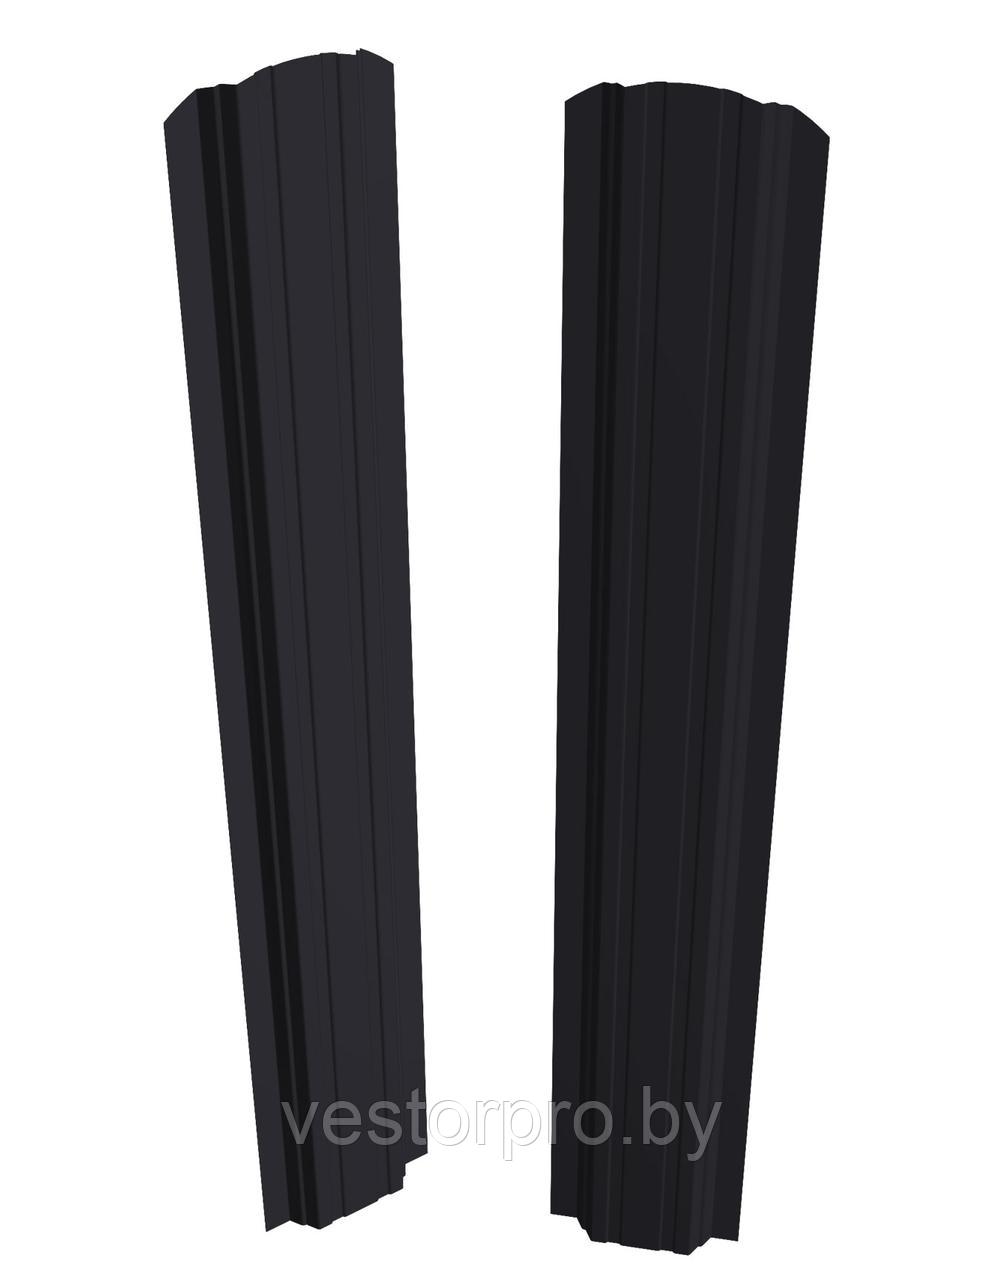 Штакетник Скайпрофиль вертикальный П-образный 97мм